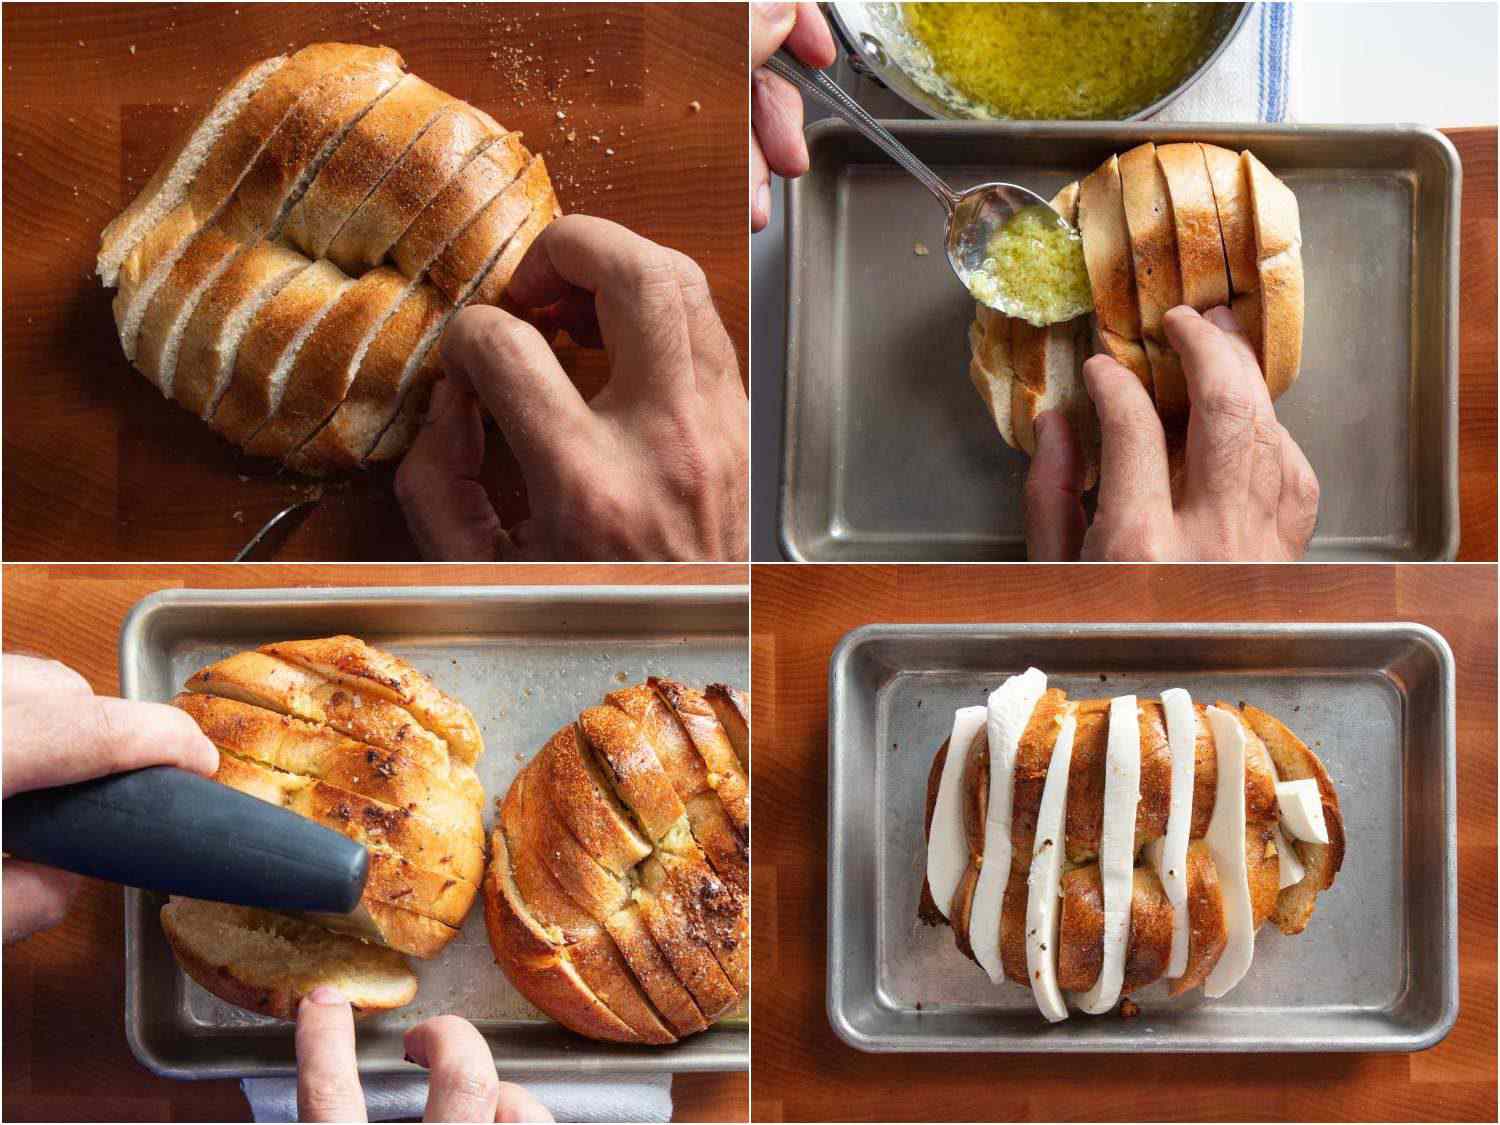 这是一组制作过程的拼贴照片，展示了一个百吉饼被像哈萨克土豆一样垂直切开，然后淋上大蒜黄油，每条缝里都塞着马苏里拉奶酪